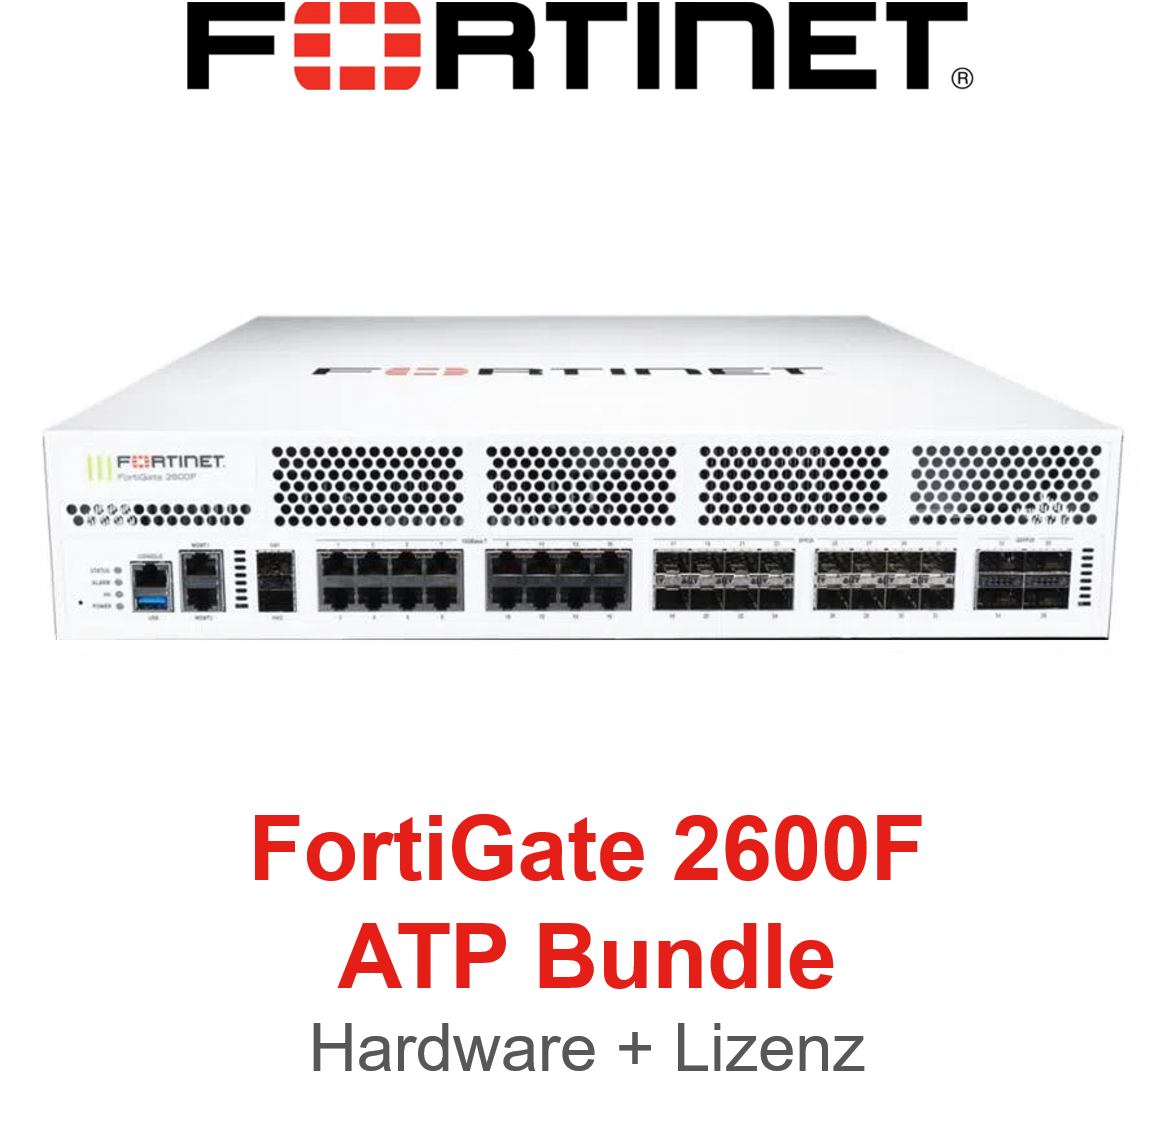 Fortinet FortiGate 2600F - ATP Bundle (Hardware + Lizenz)